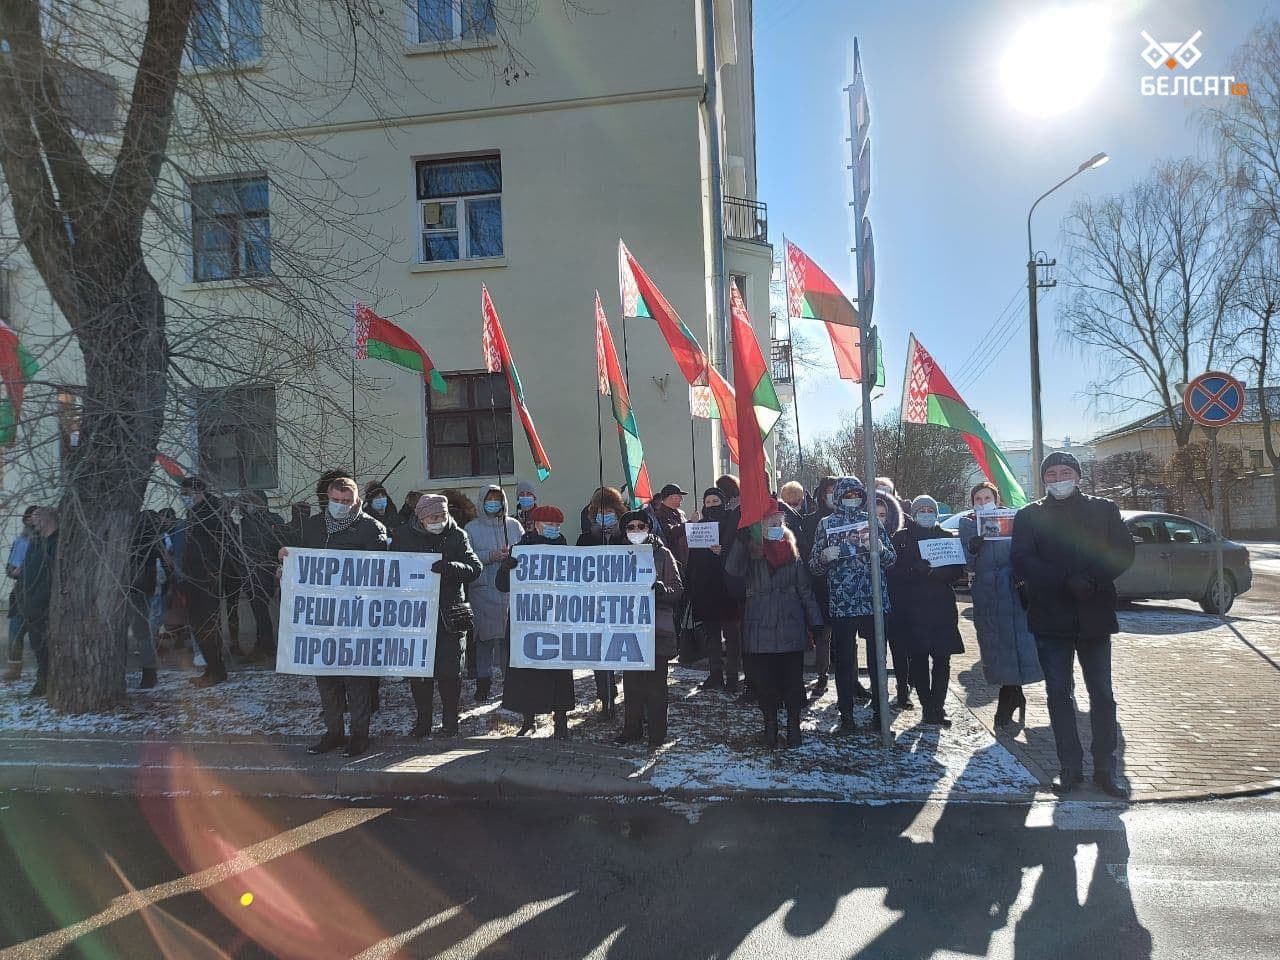 "Руки прочь от Беларуси". Фанаты Лукашенко устроили митинг, обвиняют "фашистов из Украины"